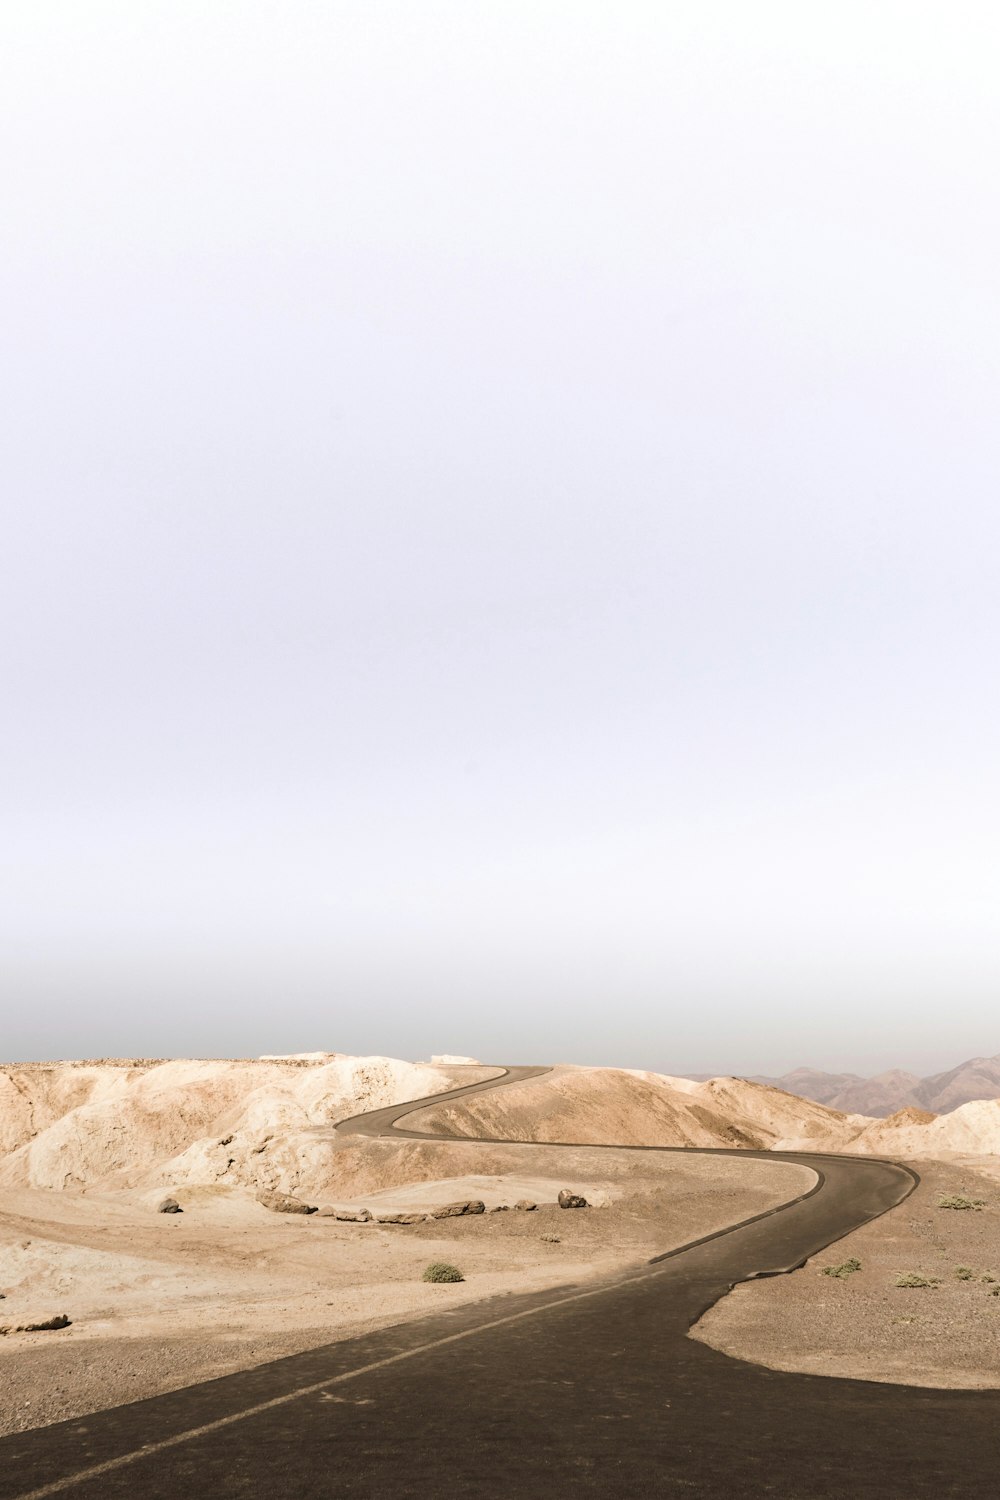 grey asphalt road on desert during daytime